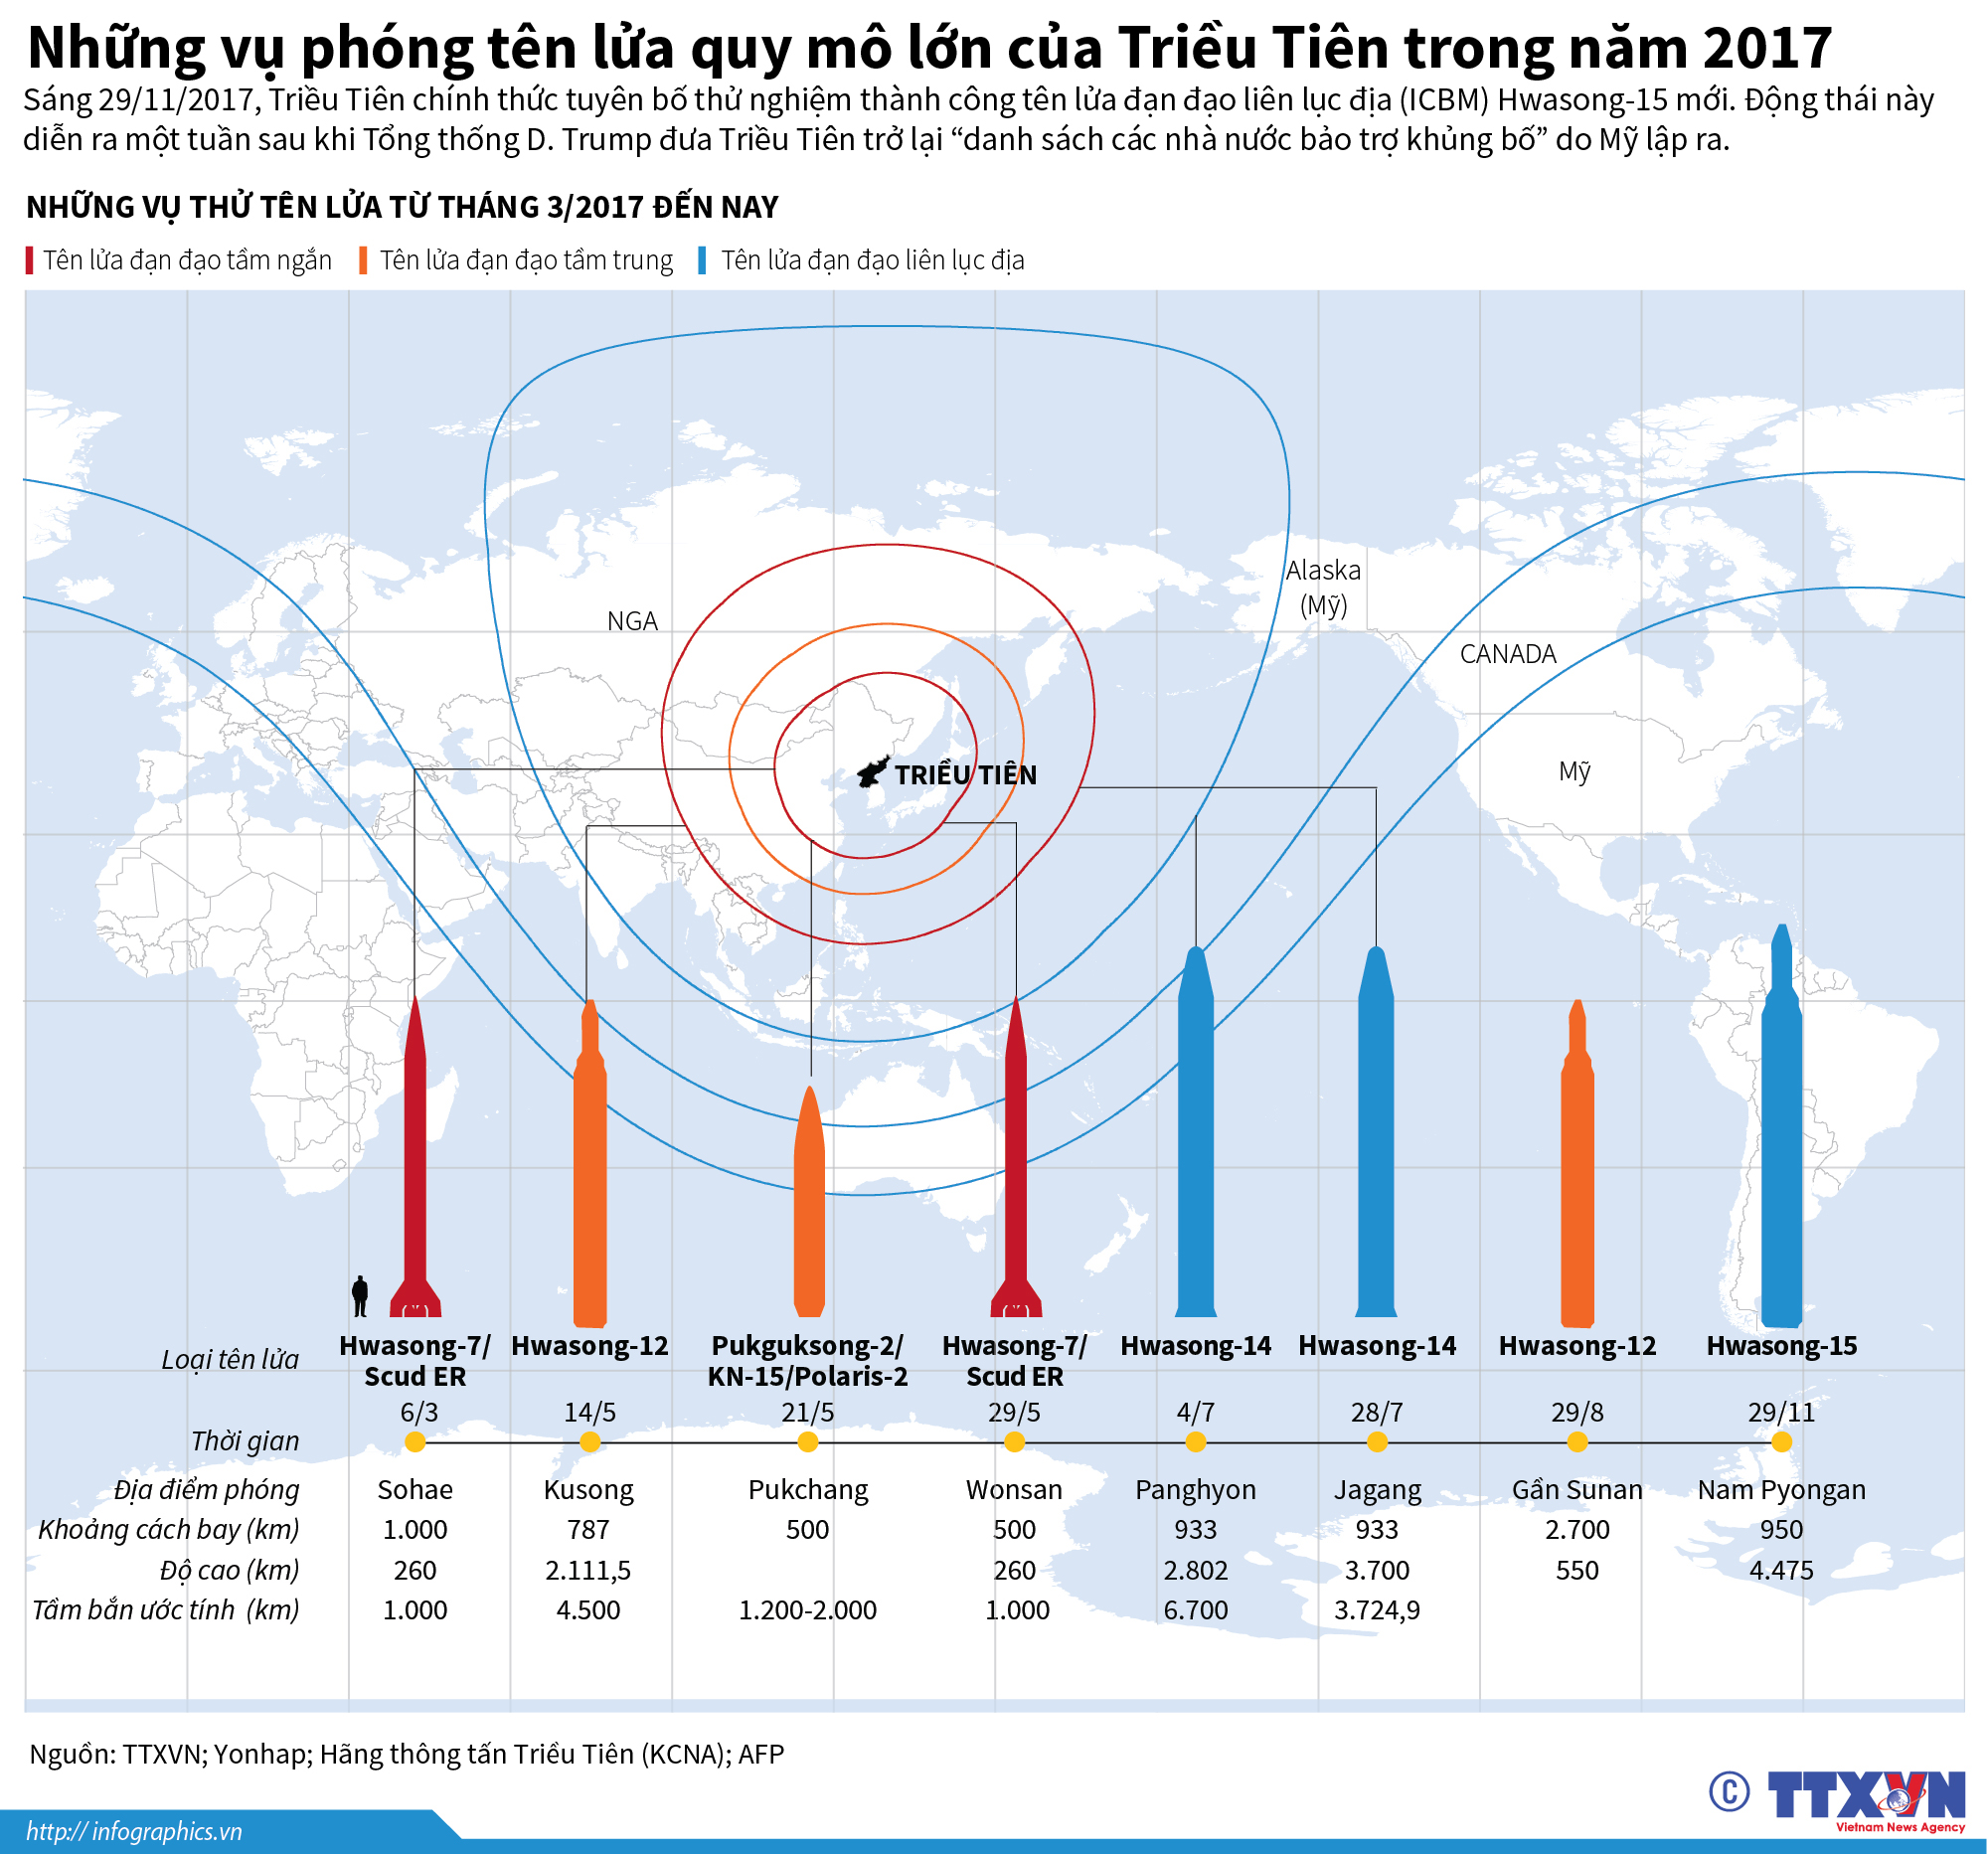 Những vụ phóng tên lửa quy mô lớn của Triều Tiên năm 2017. (Nguồn: TTXVN)